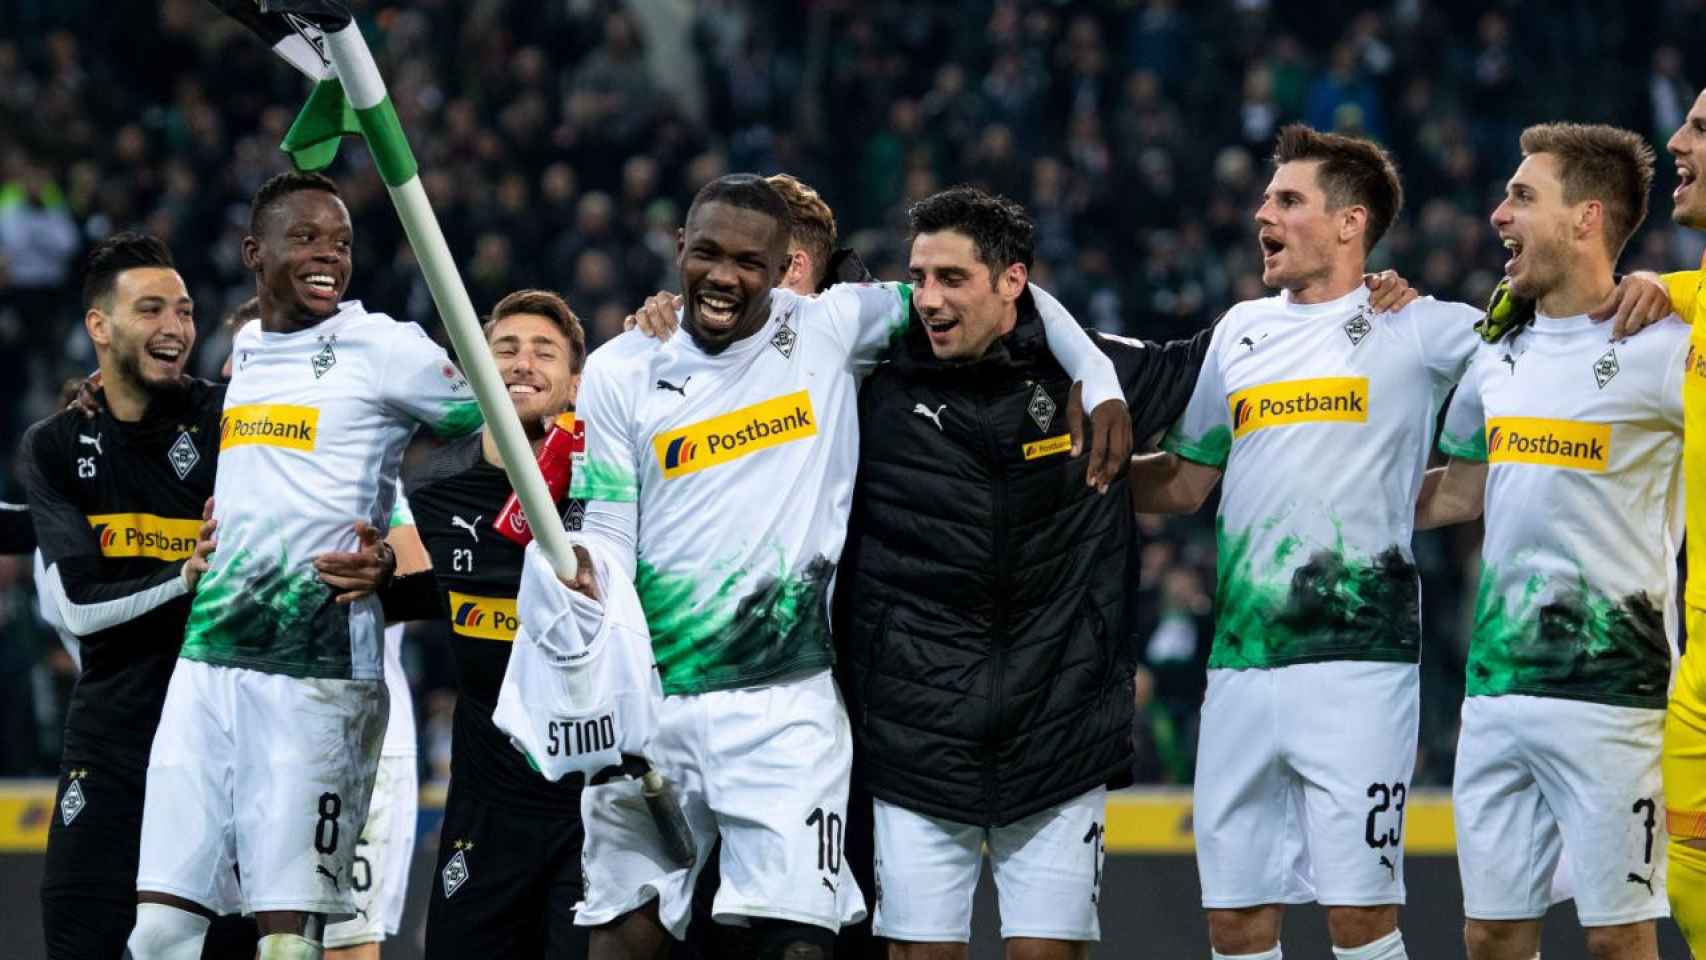 Los jugadores del Borussia Monchengladbach celebrando una victoria con su afición / EFE